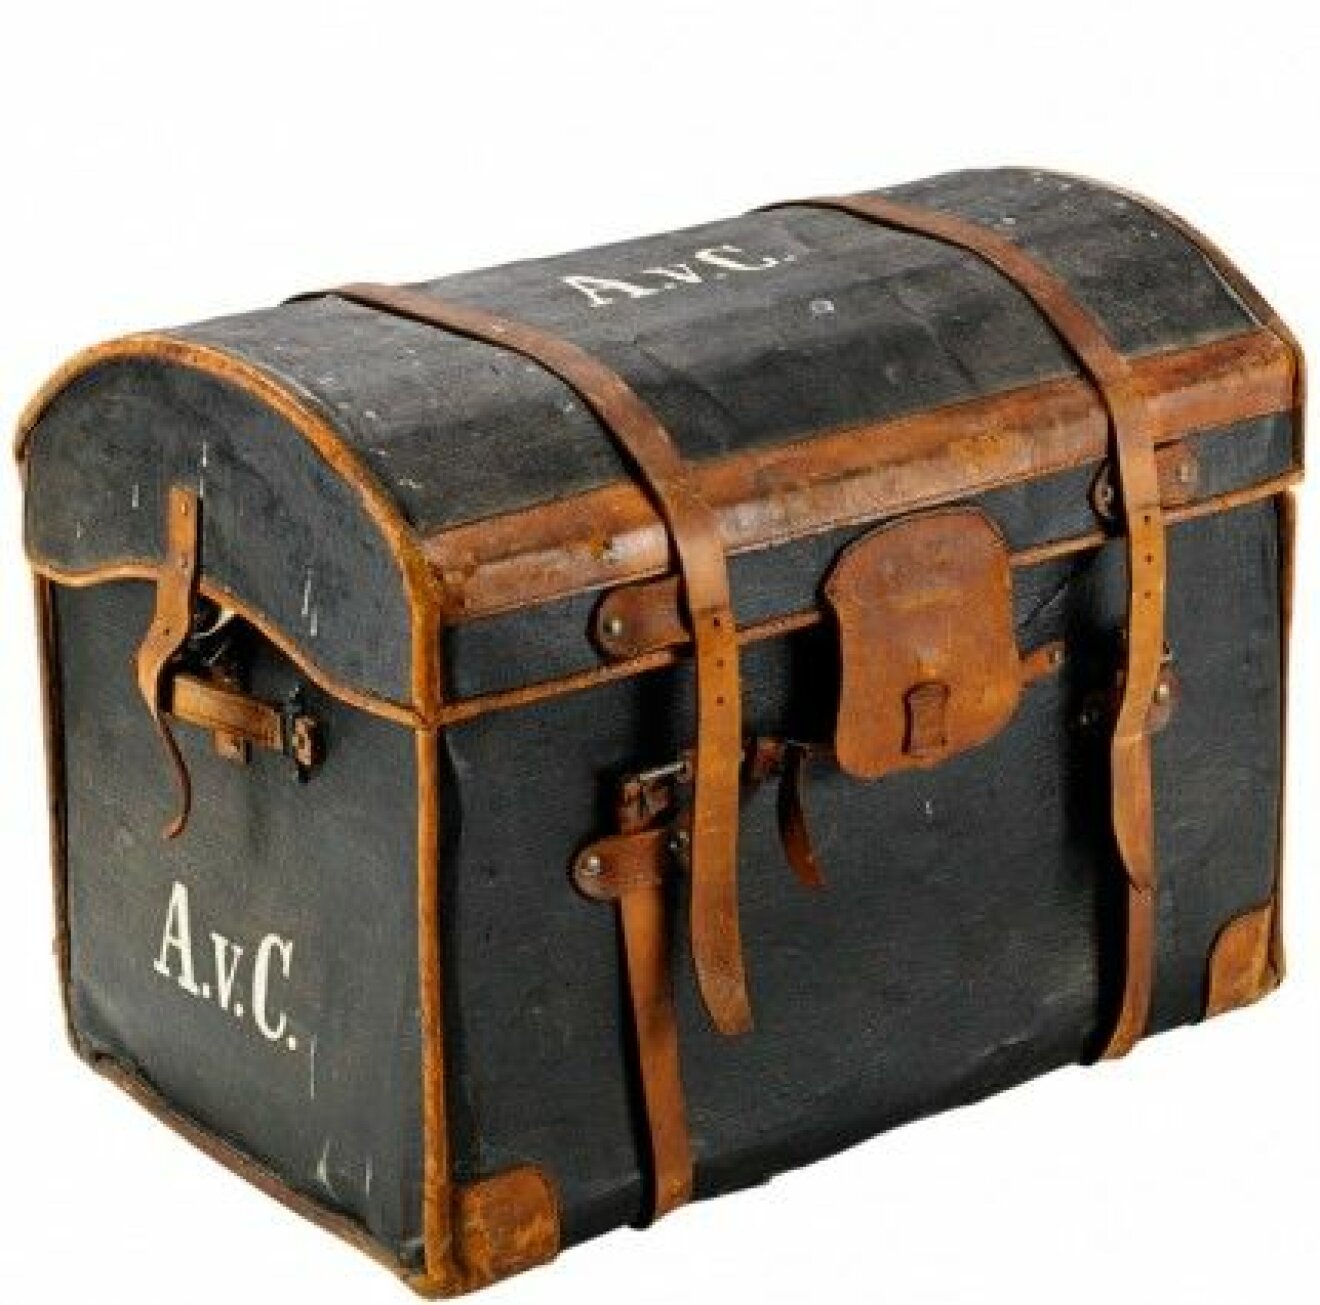 Koffert från 1800-talets andra hälft märkt AvC (Anna von Celsing). Ingick i en samling från Biby fideikomiss som såldes på Klassiska på Stockholms Auktionsverk i juni. Kofferten såldes för 20 000 kr (utrop 2 000–3 000 kr)